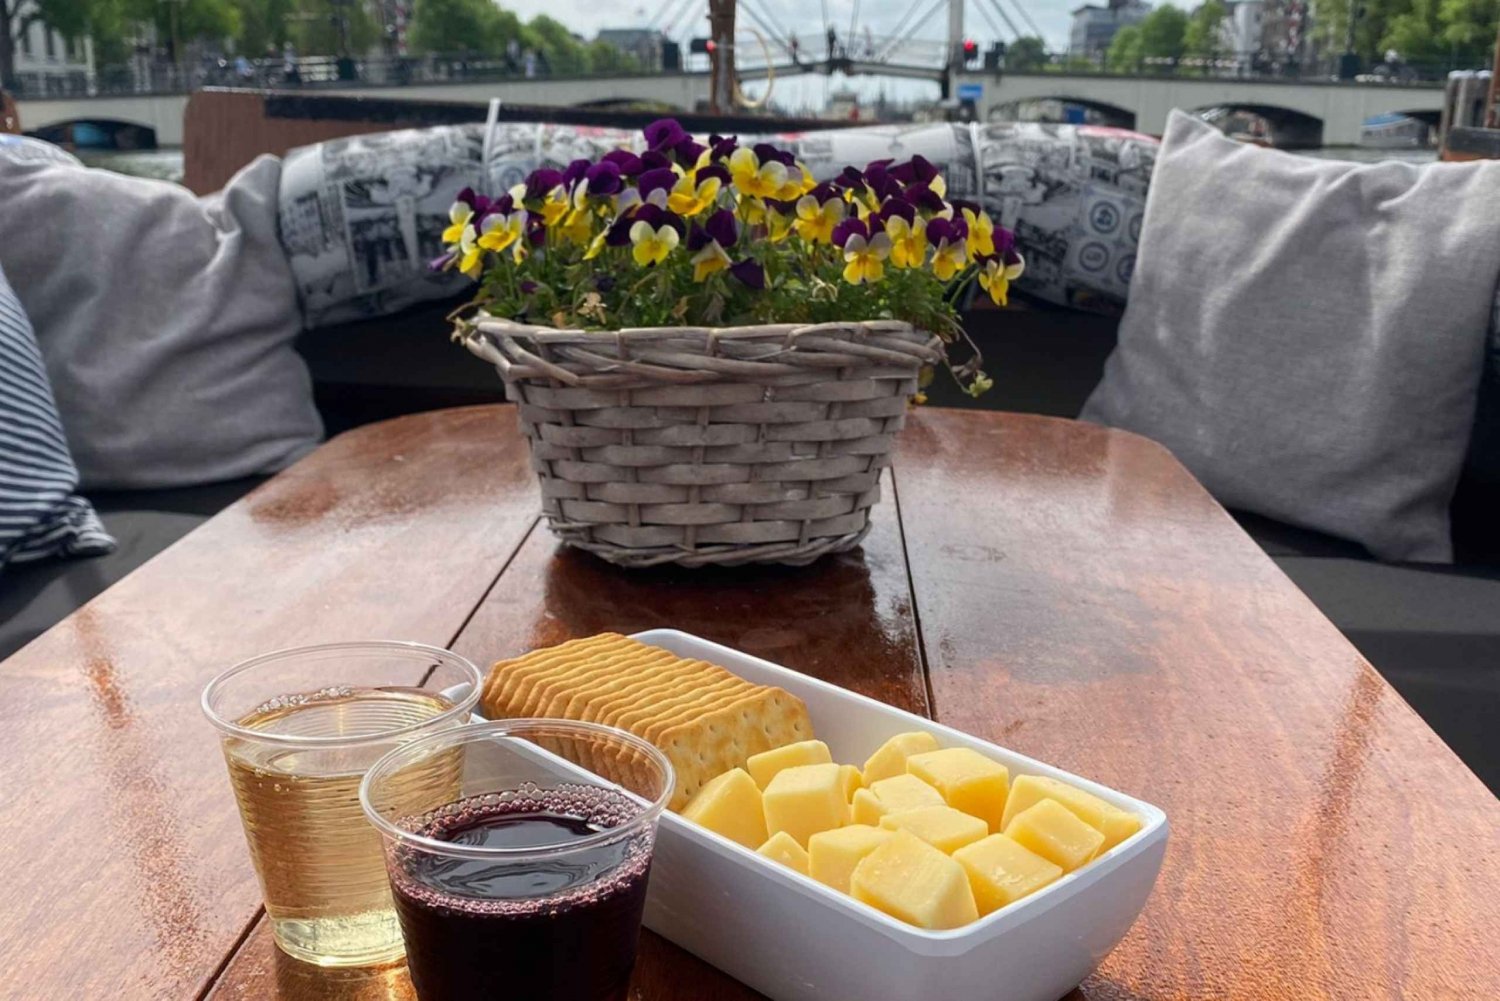 Crociera sul canale con formaggio e bevande olandesi - con veri abitanti del posto